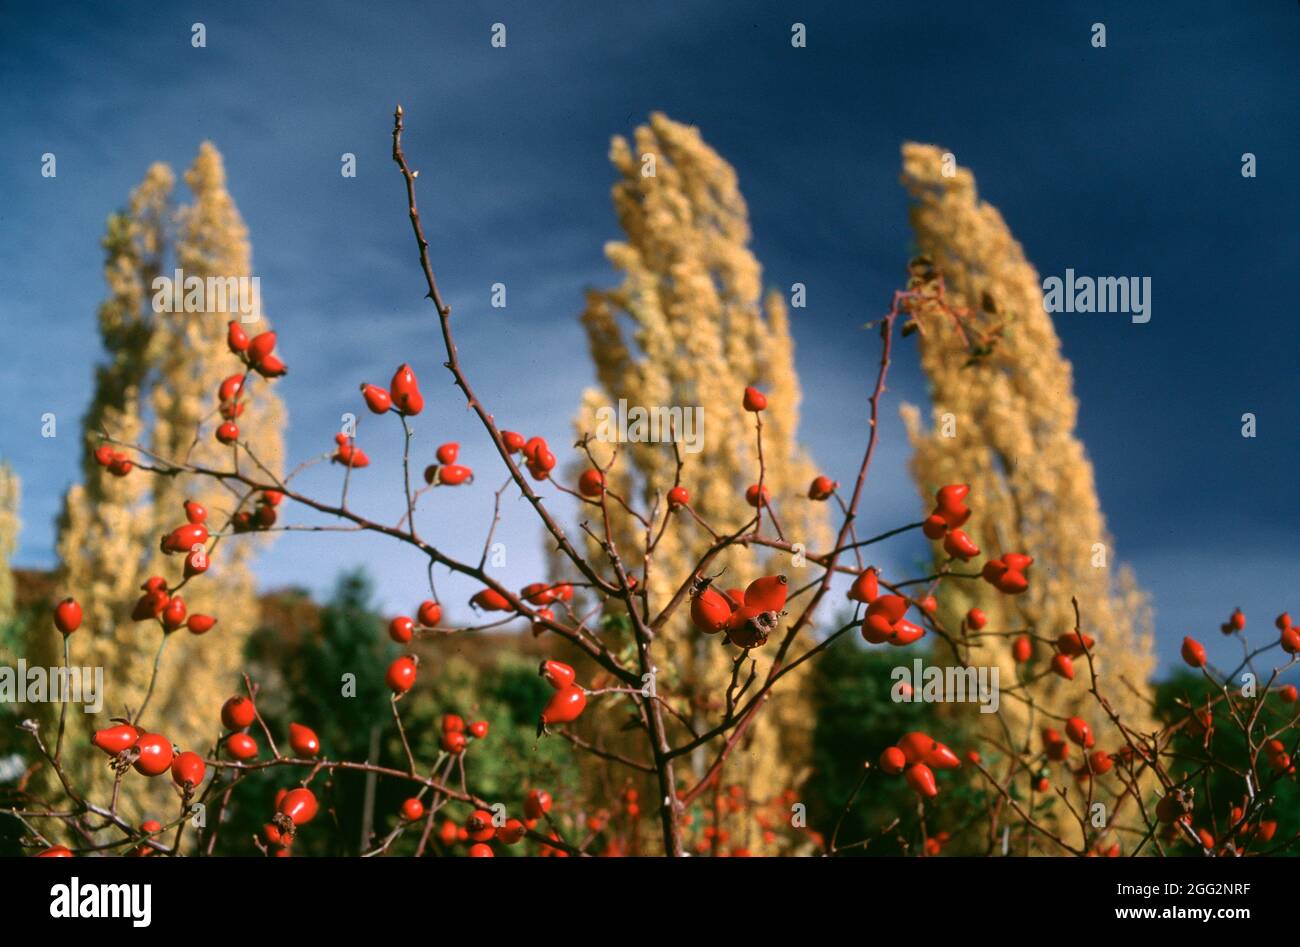 Muchas bayas rojas frente a un fondo de árboles amarillos durante la temporada de otoño Foto de stock